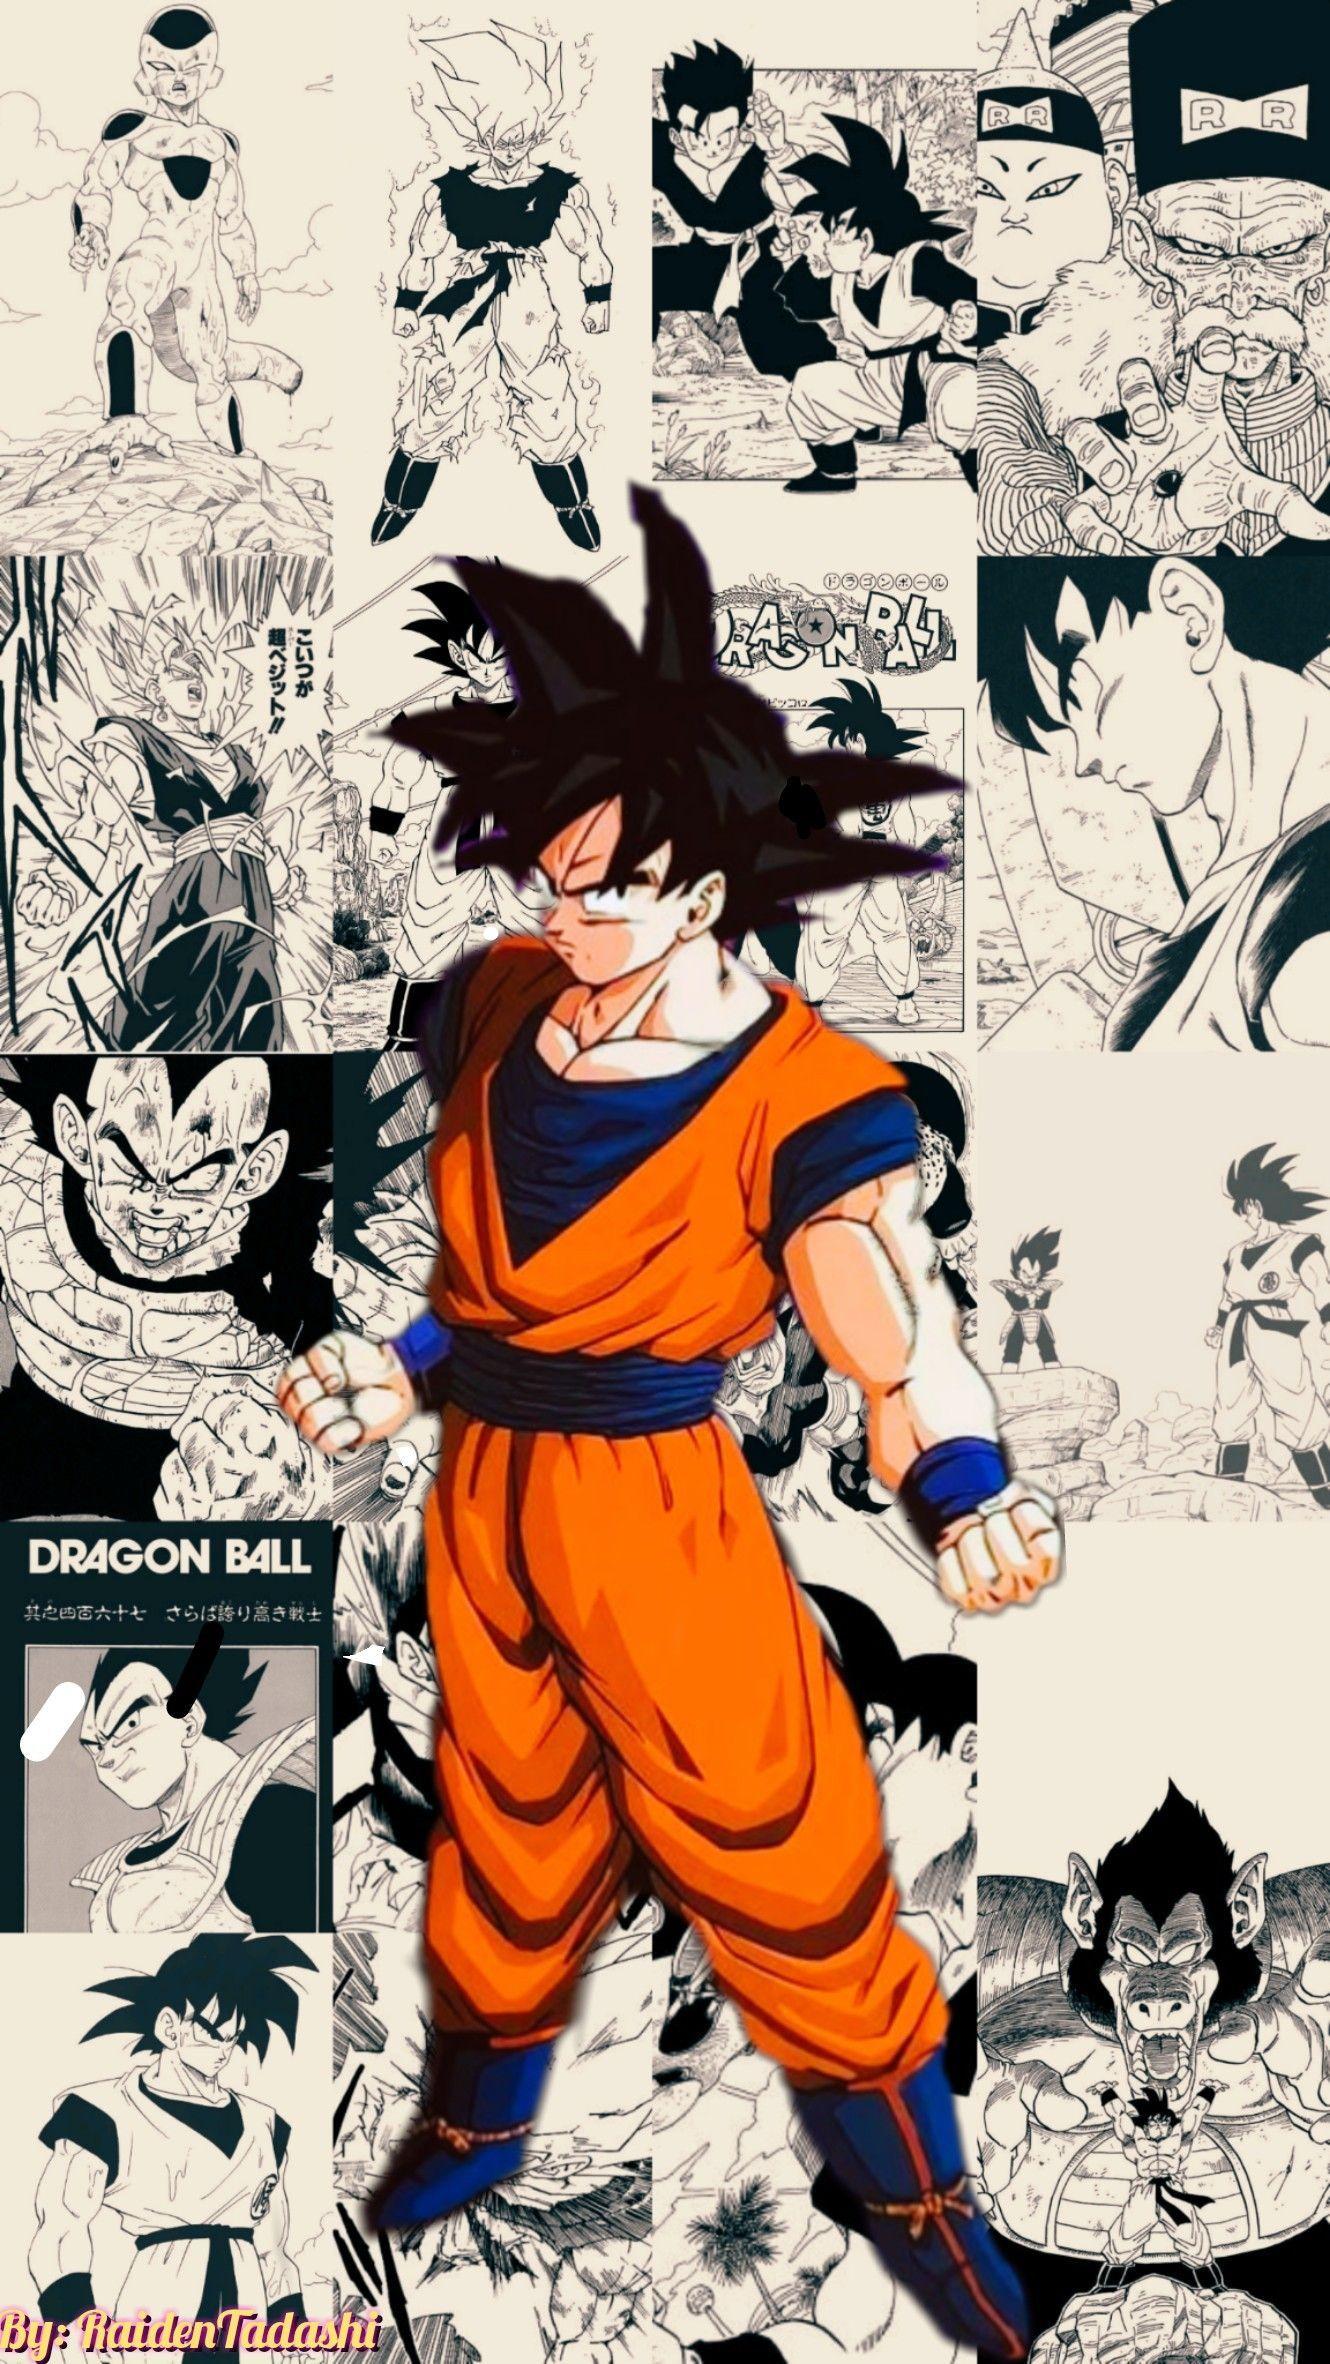 Dragon Ball Manga Wallpapers - Top Free Dragon Ball Manga Backgrounds ...